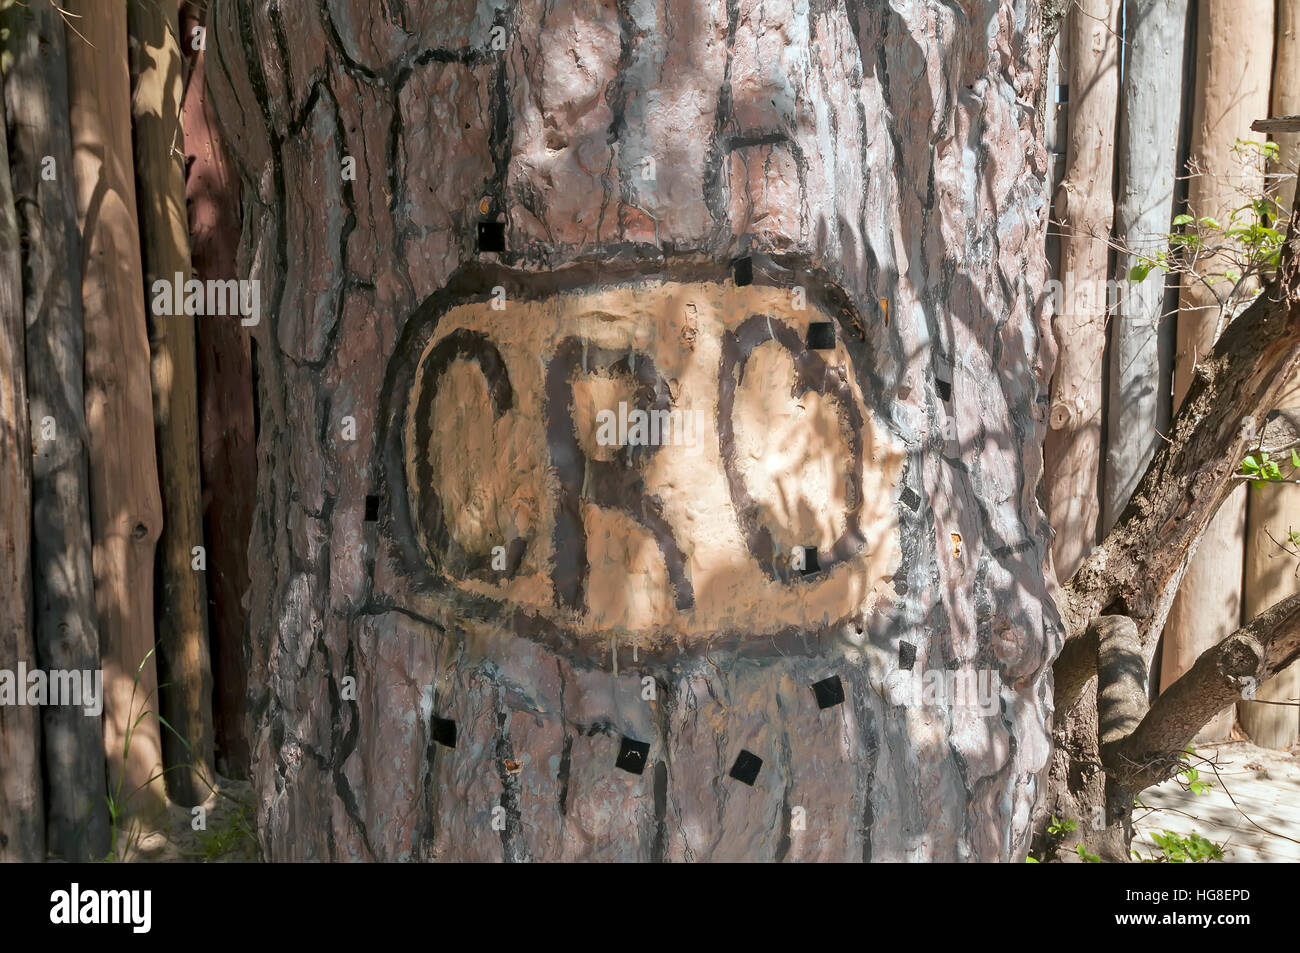 'Cro' Symbol cut into tree by Lost Colony at  Roanoke Island North Carolina Stock Photo